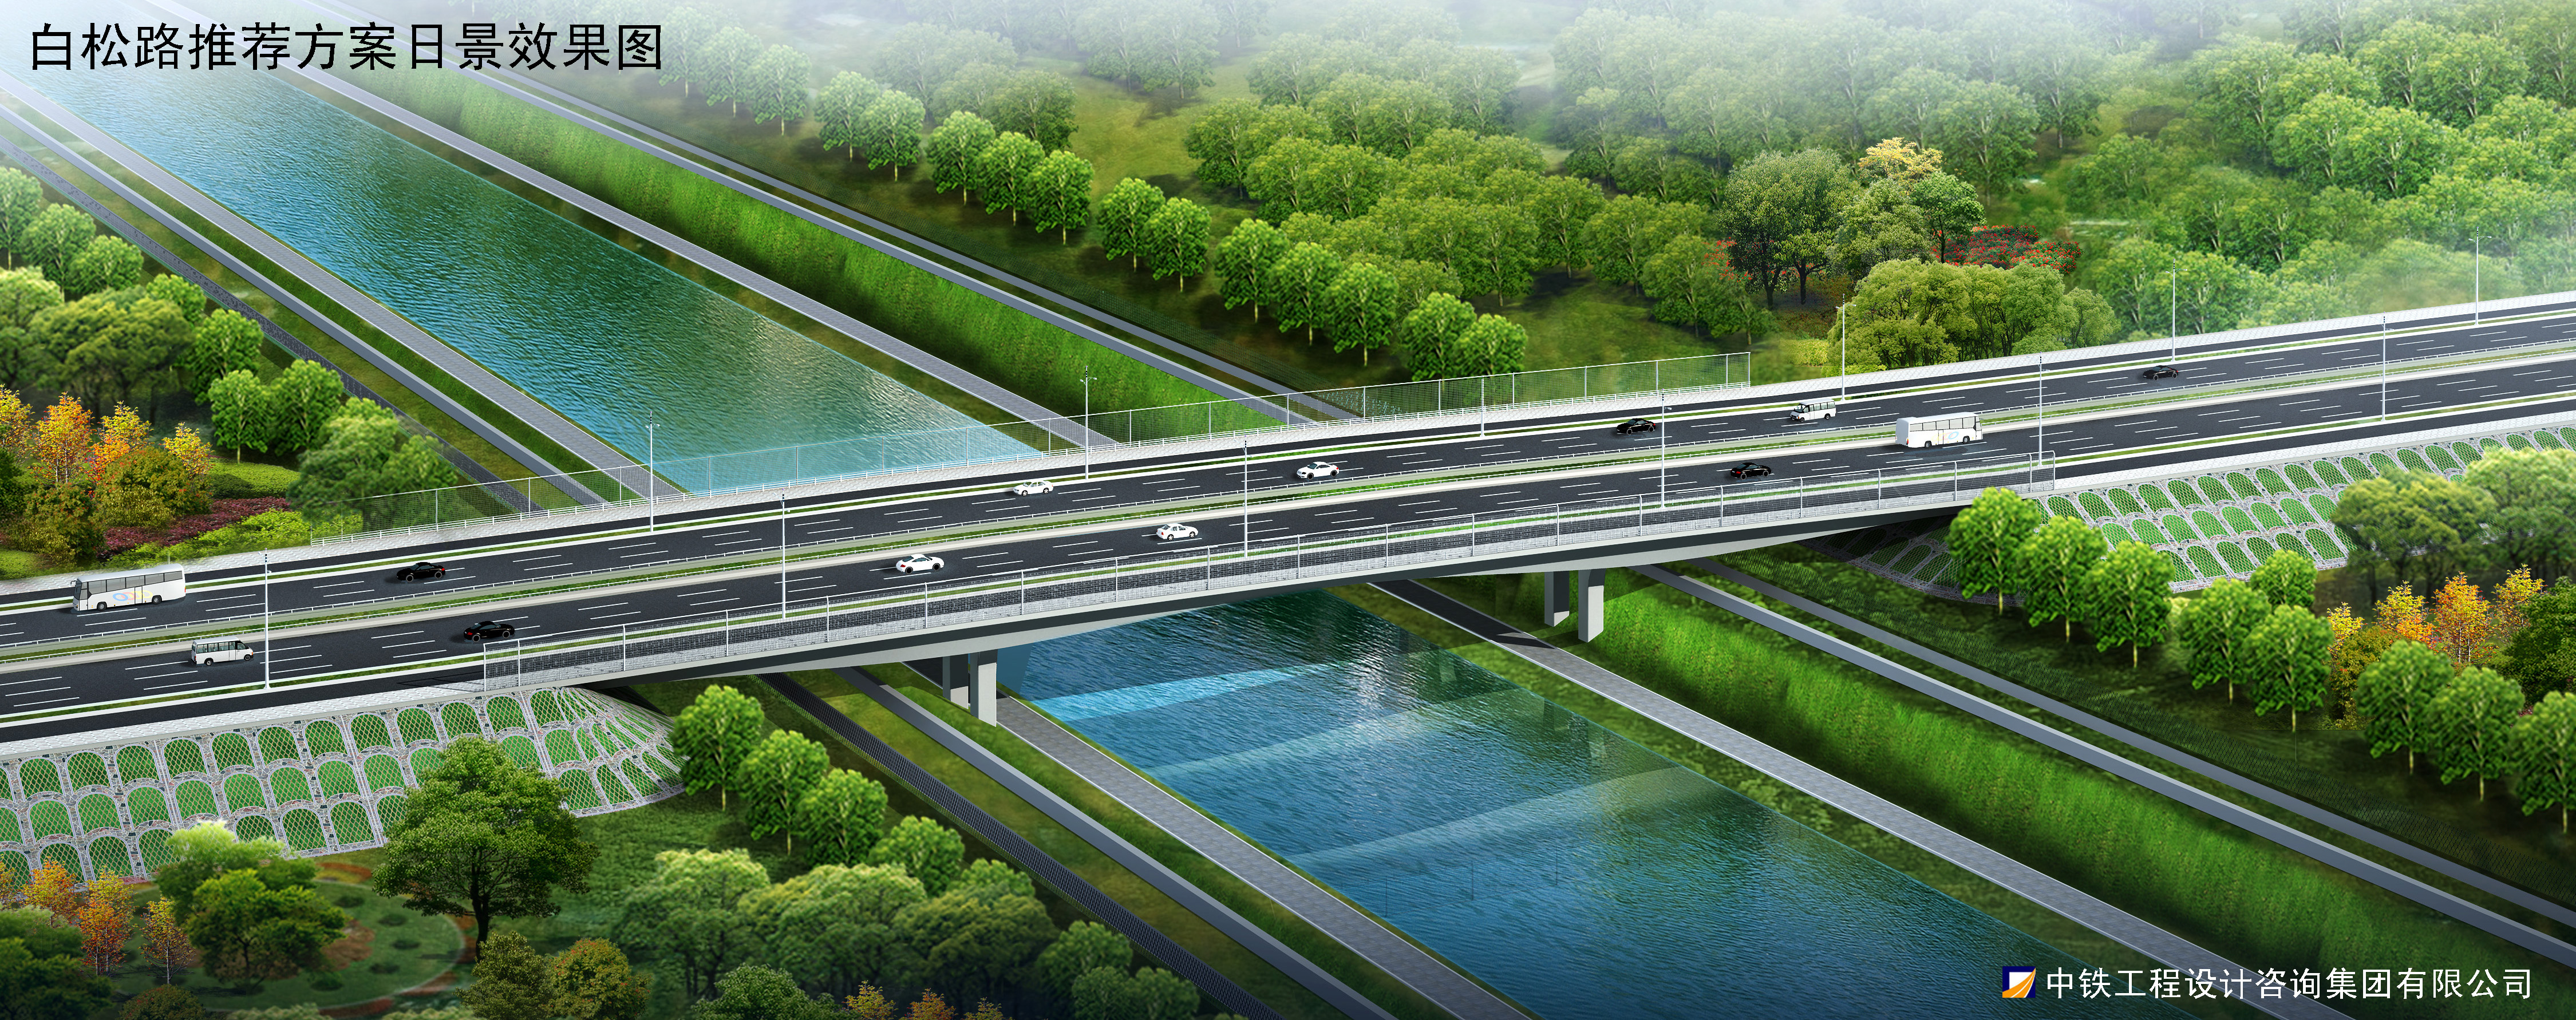 郑州市白松路跨南水北调总干渠桥梁工程